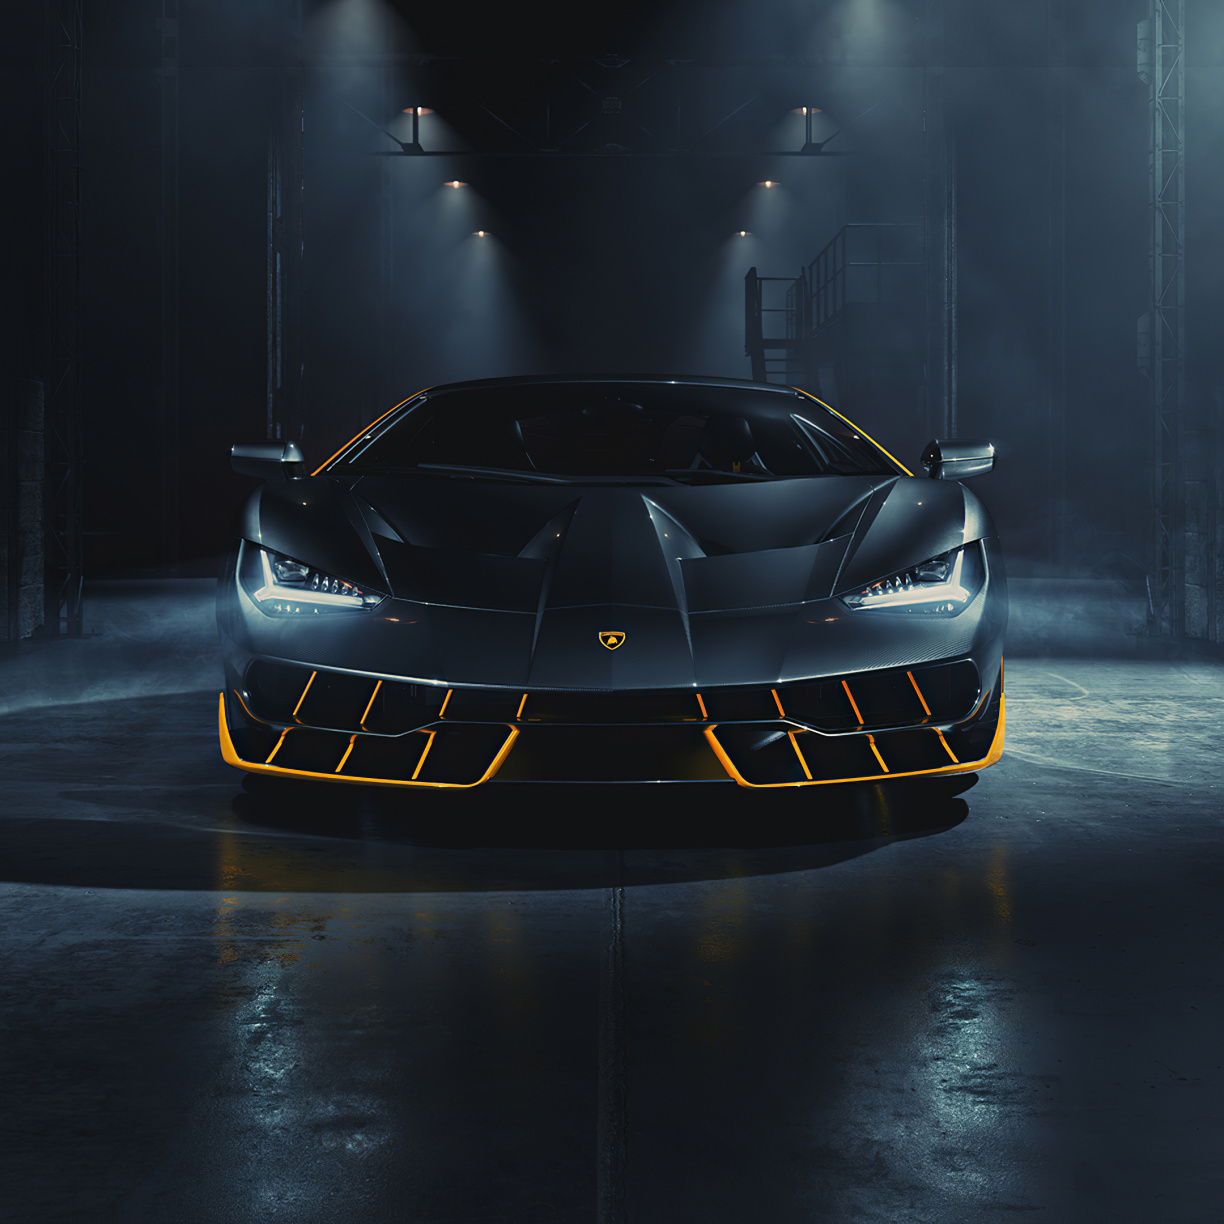 Lamborghini Centenario, Front View Wallpaper, 3840x HD Image, Picture, A43faec0